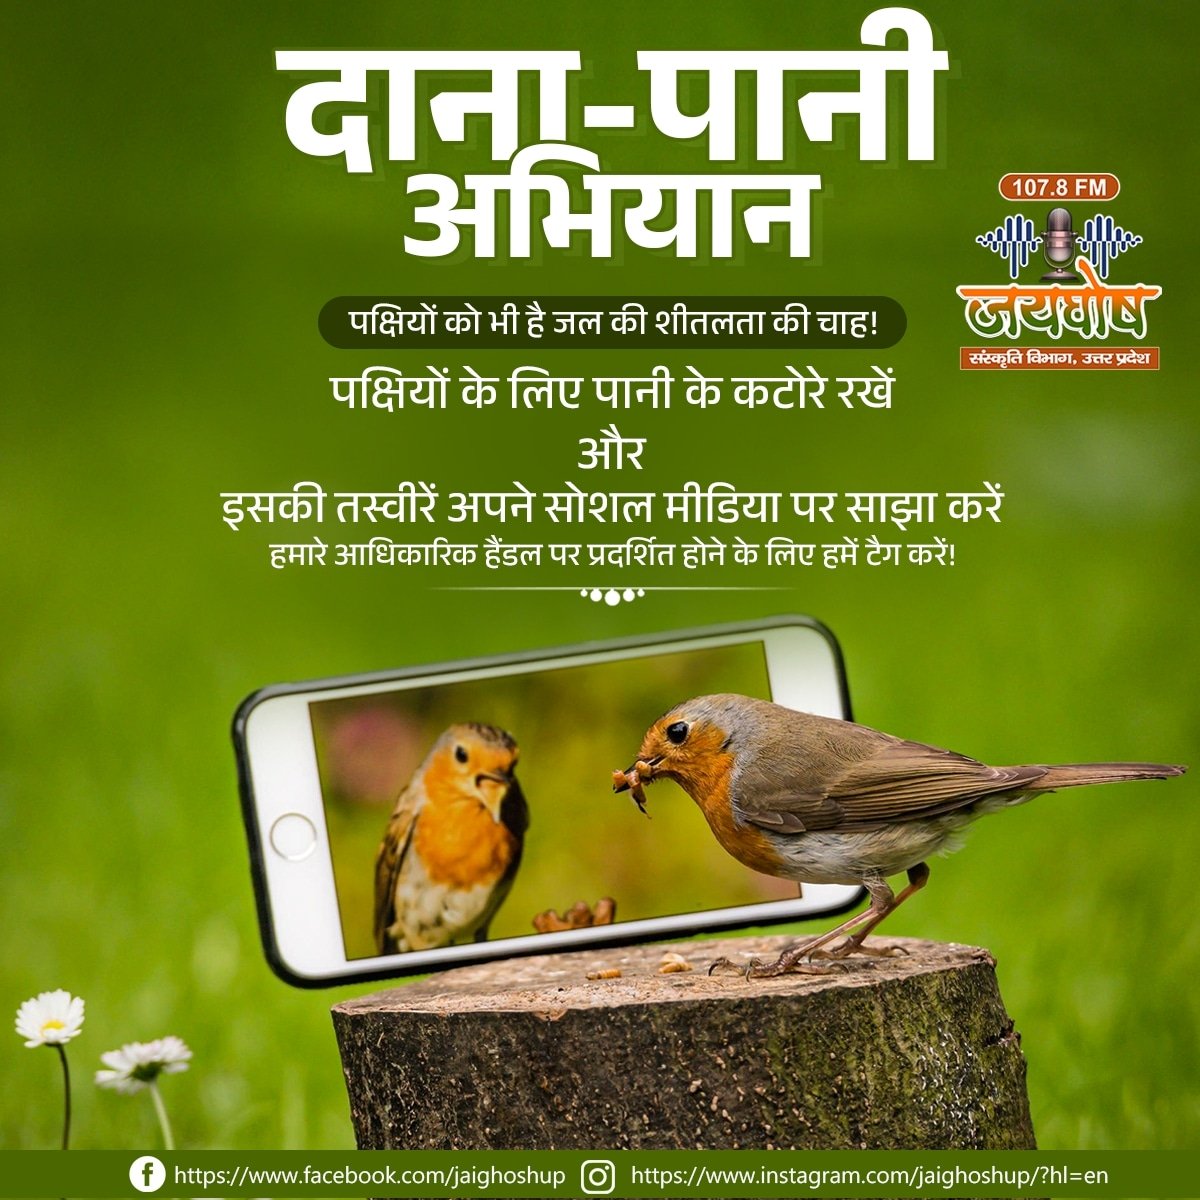 #रेडियो_जयघोष 107.8 #FM का दाना पानी अभियान।

तो आइए आप और हम मिलकर जुड़ते हैं इस #दाना_पानी अभियान से।
हमें इंतजार रहेगा आपकी तस्वीरों और वीडियो का।

#summertime #heatwave #saveanimals 
#savenature #birds #streetanimals 
#radiojaighoshup #fm